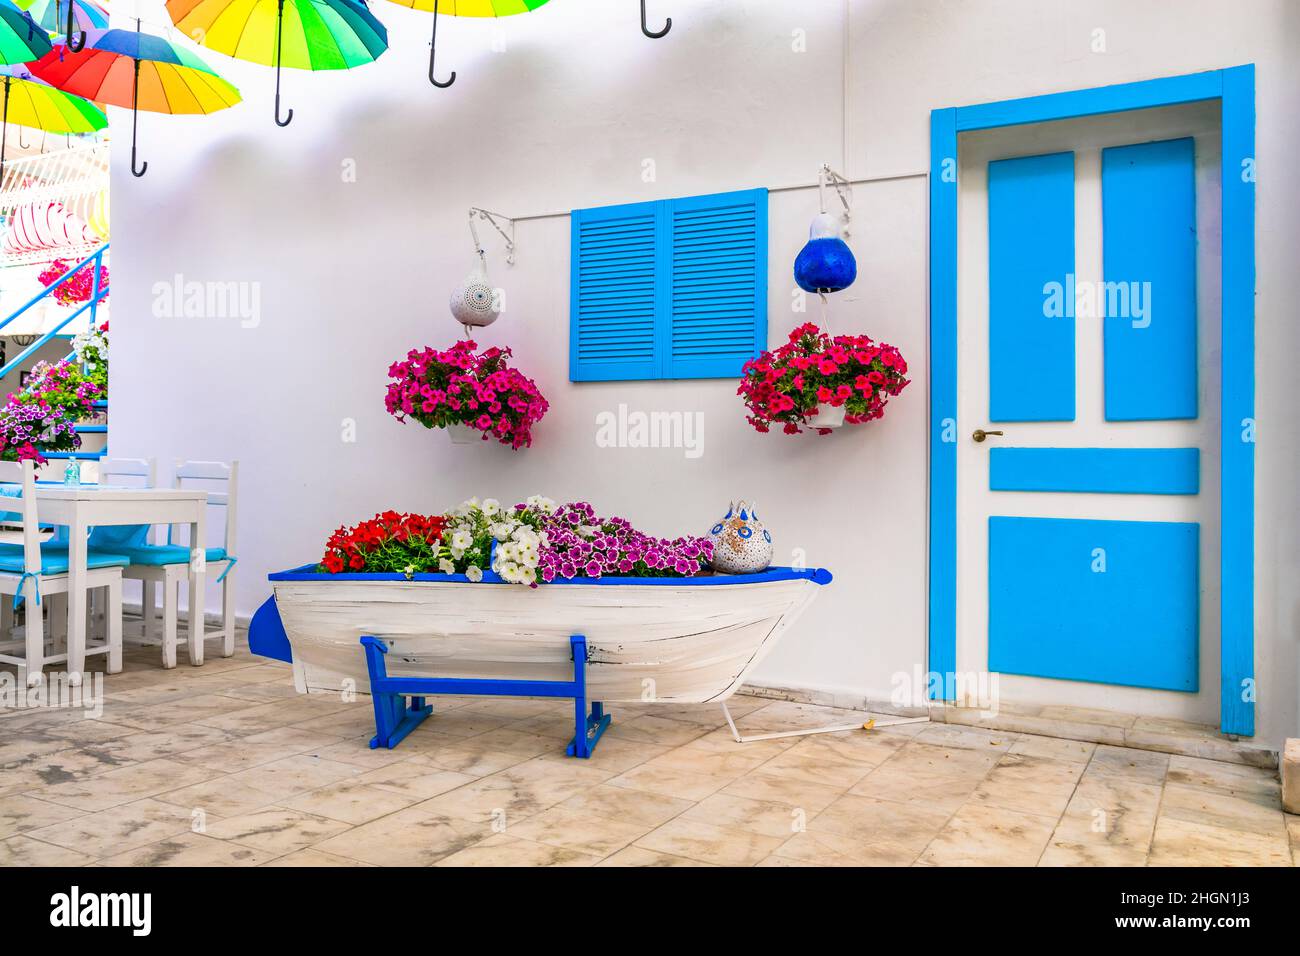 Décoration florale extérieure avec parasols colorés. Idées de jardin. Décor méditerranéen Banque D'Images